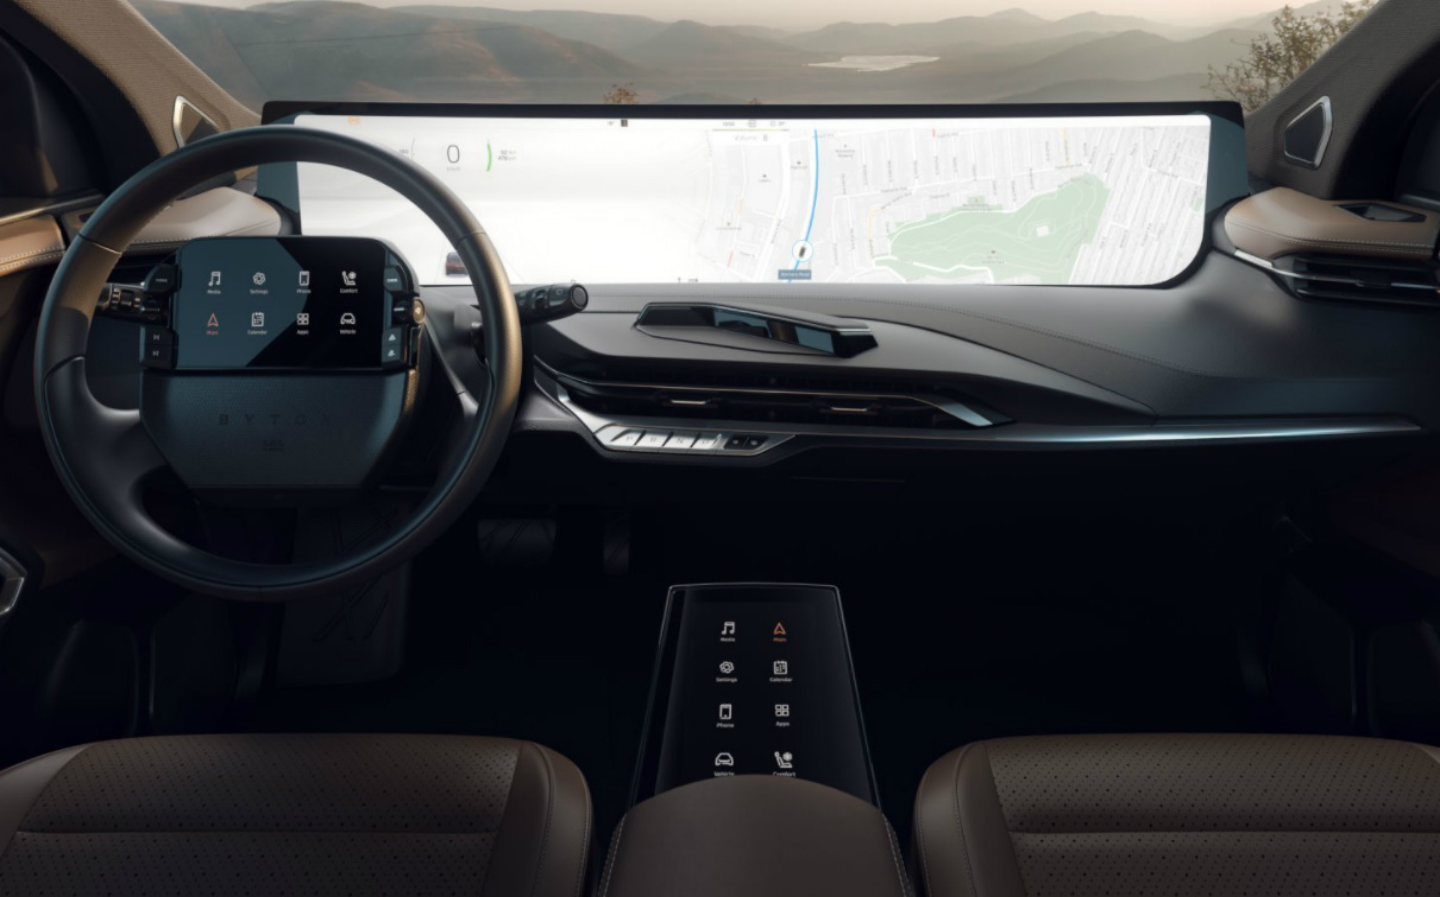 Top 5: CES 2019 coolest car tech reveals